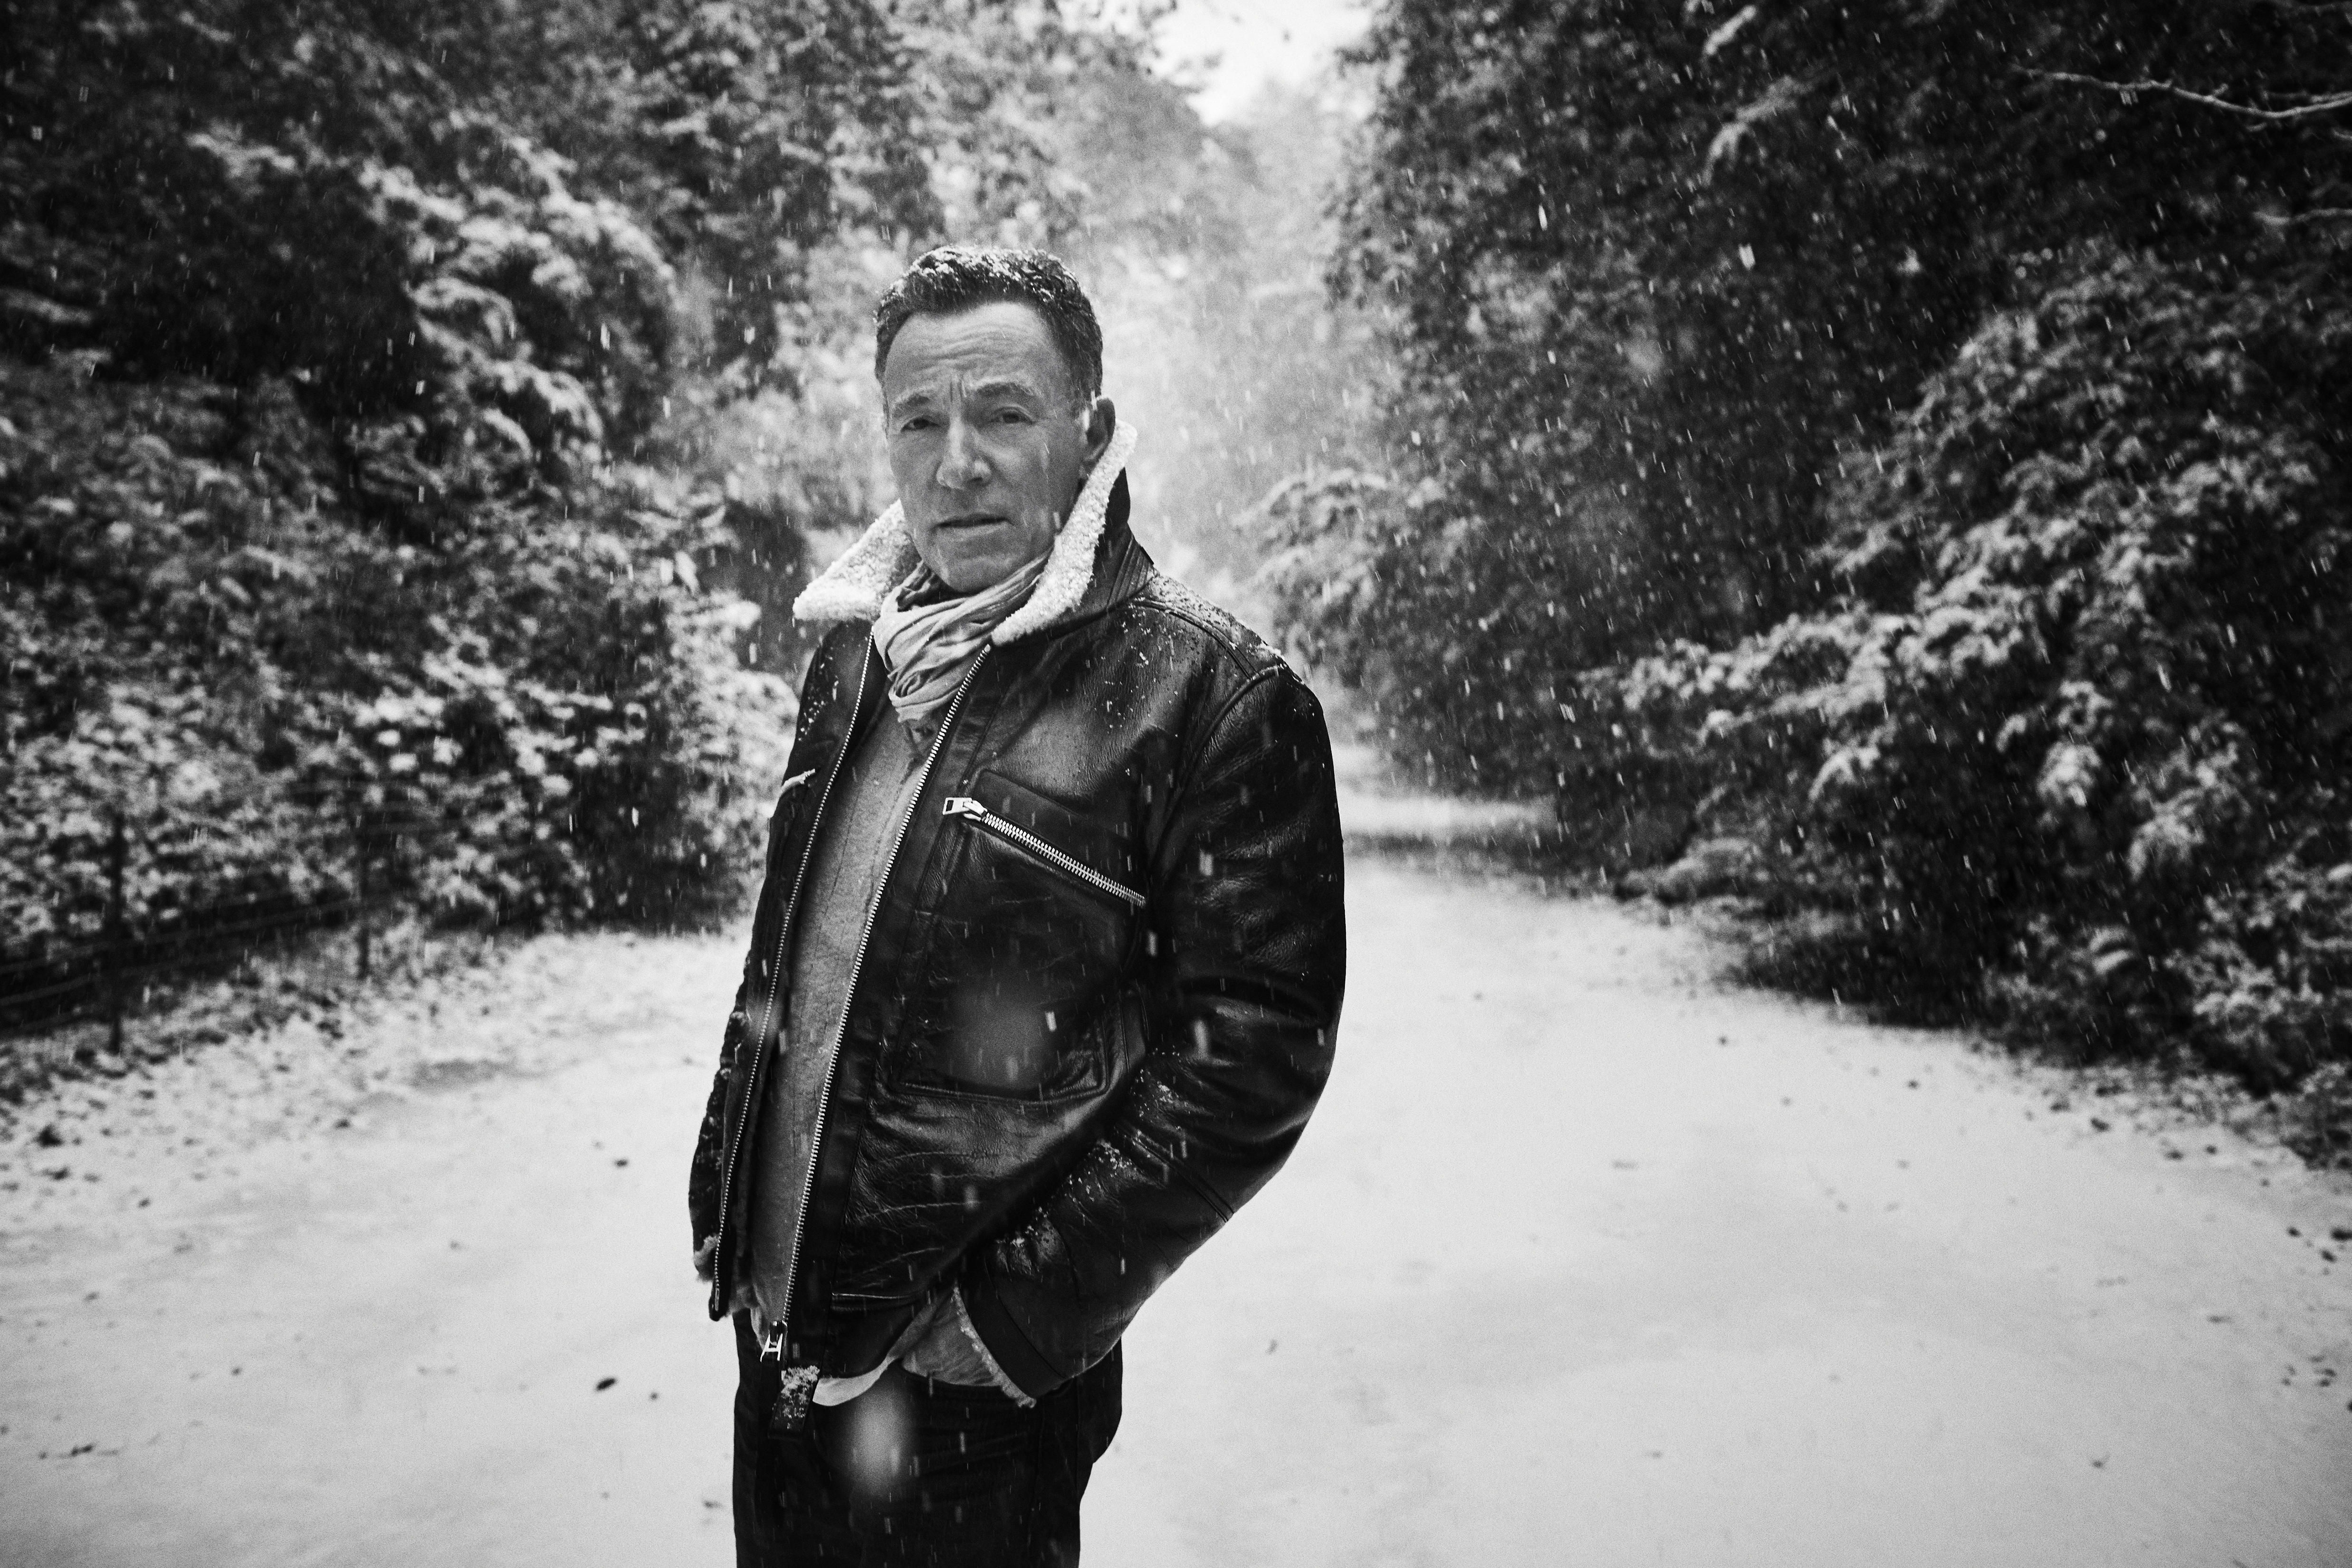 To - You (140g - Letter black vinyl) Bruce Springsteen (Vinyl)